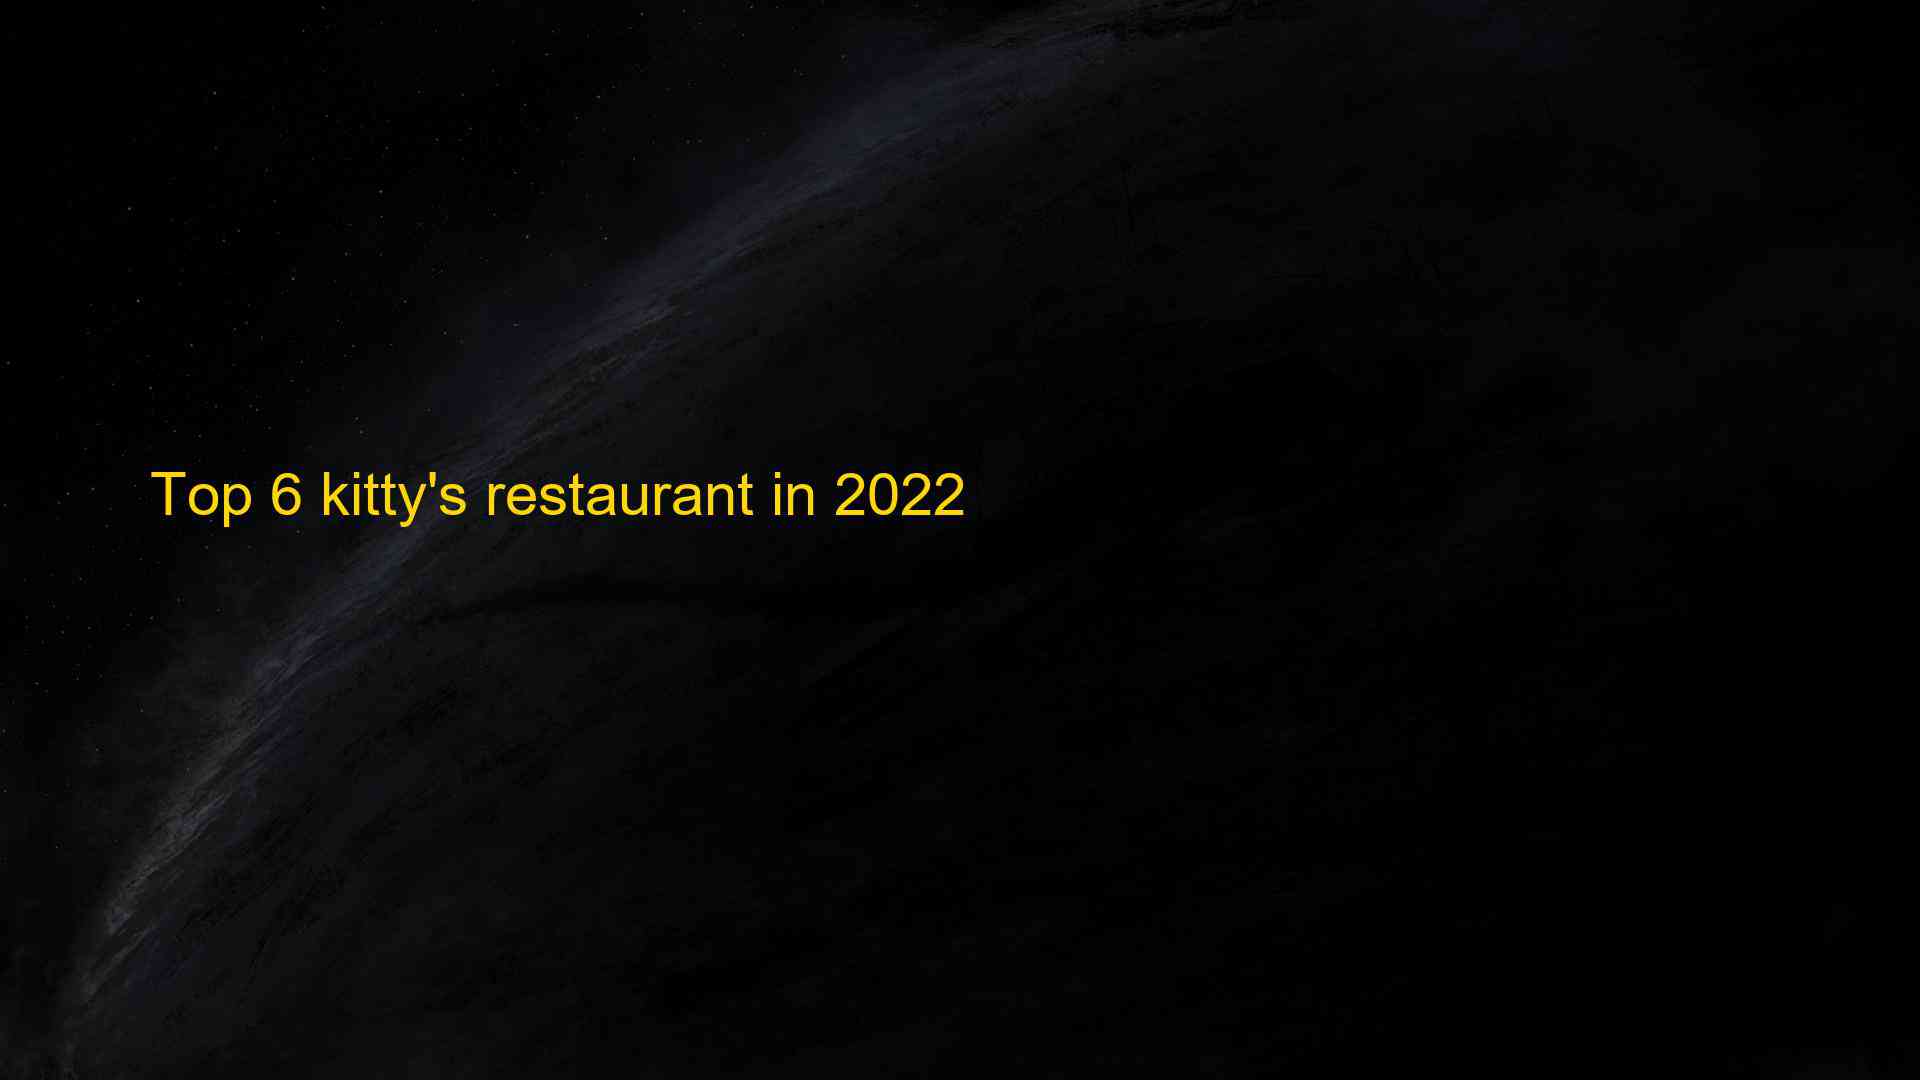 Top 6 kittys restaurant in 2022 1662997401